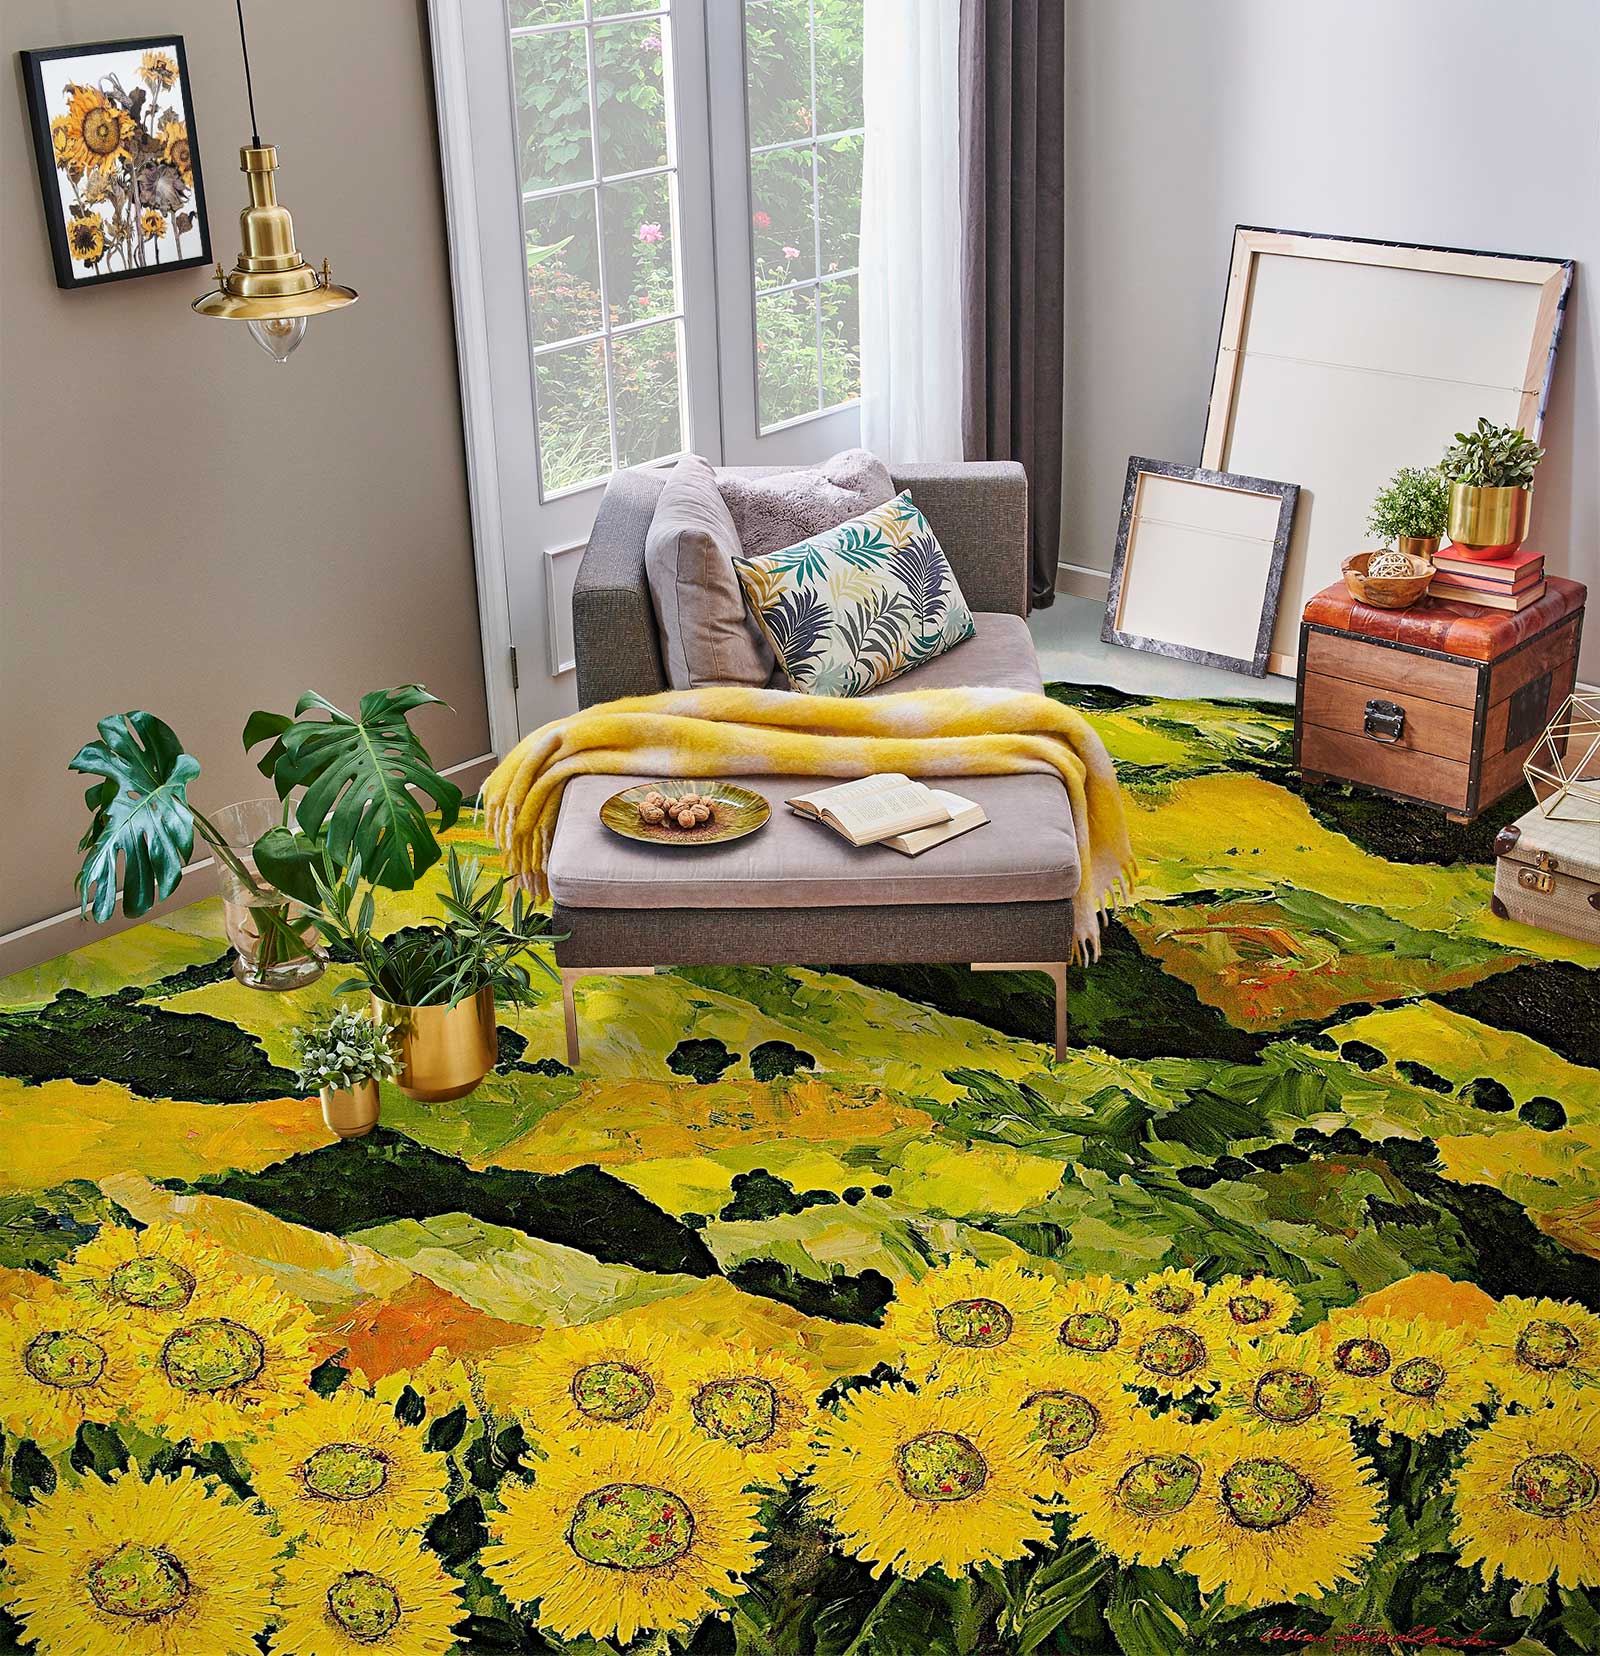 3D Hillside Sunflower Bush 9613 Allan P. Friedlander Floor Mural